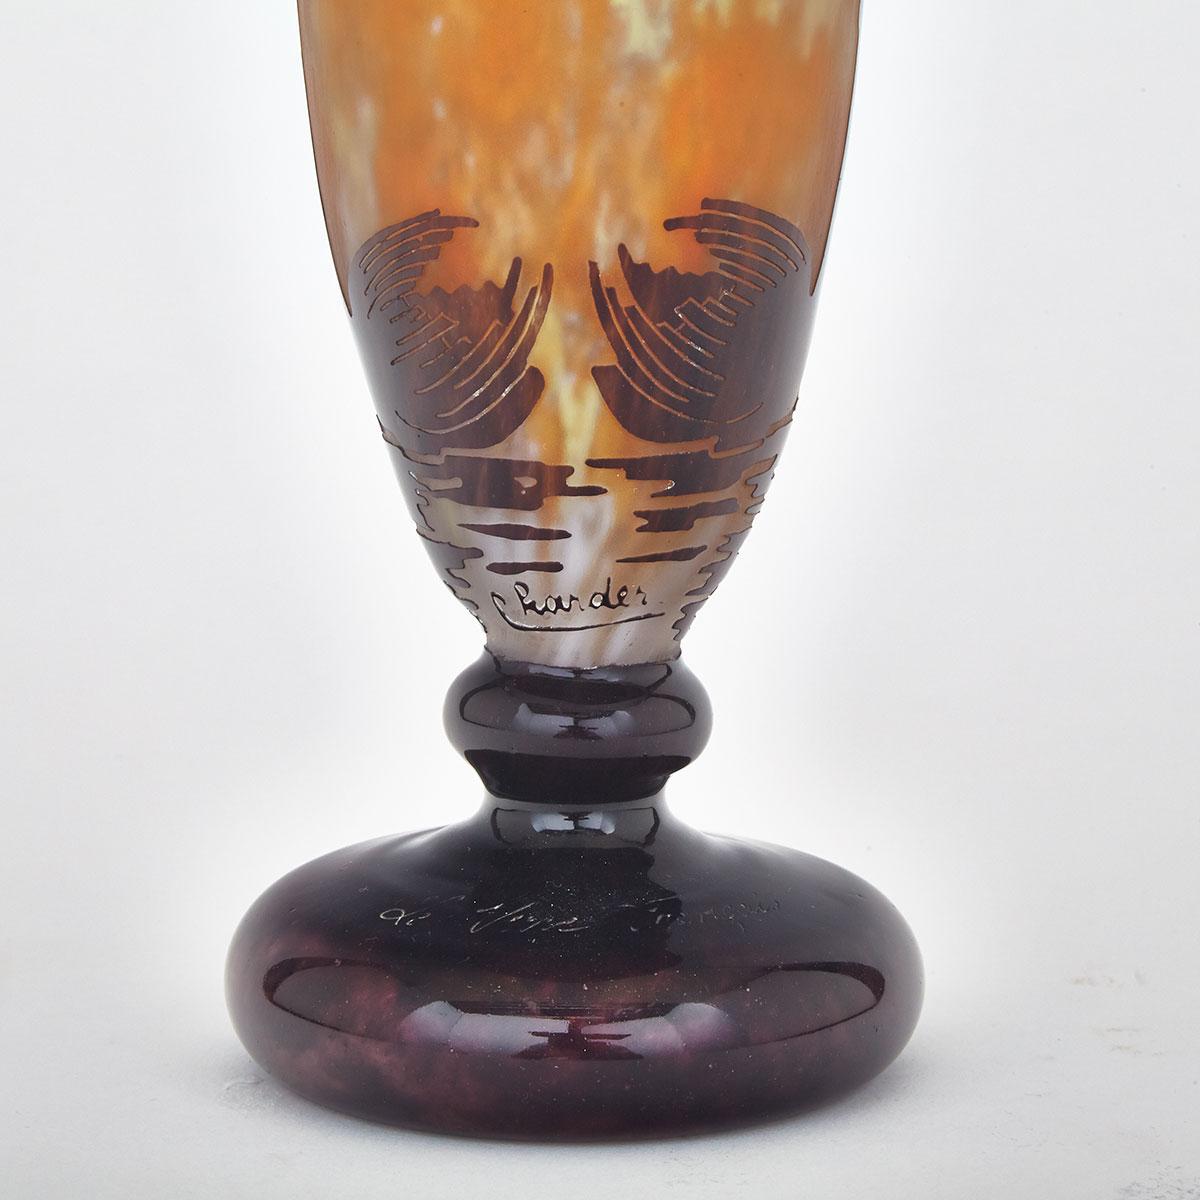 Le Verre Français Cameo Glass Vase, c.1925